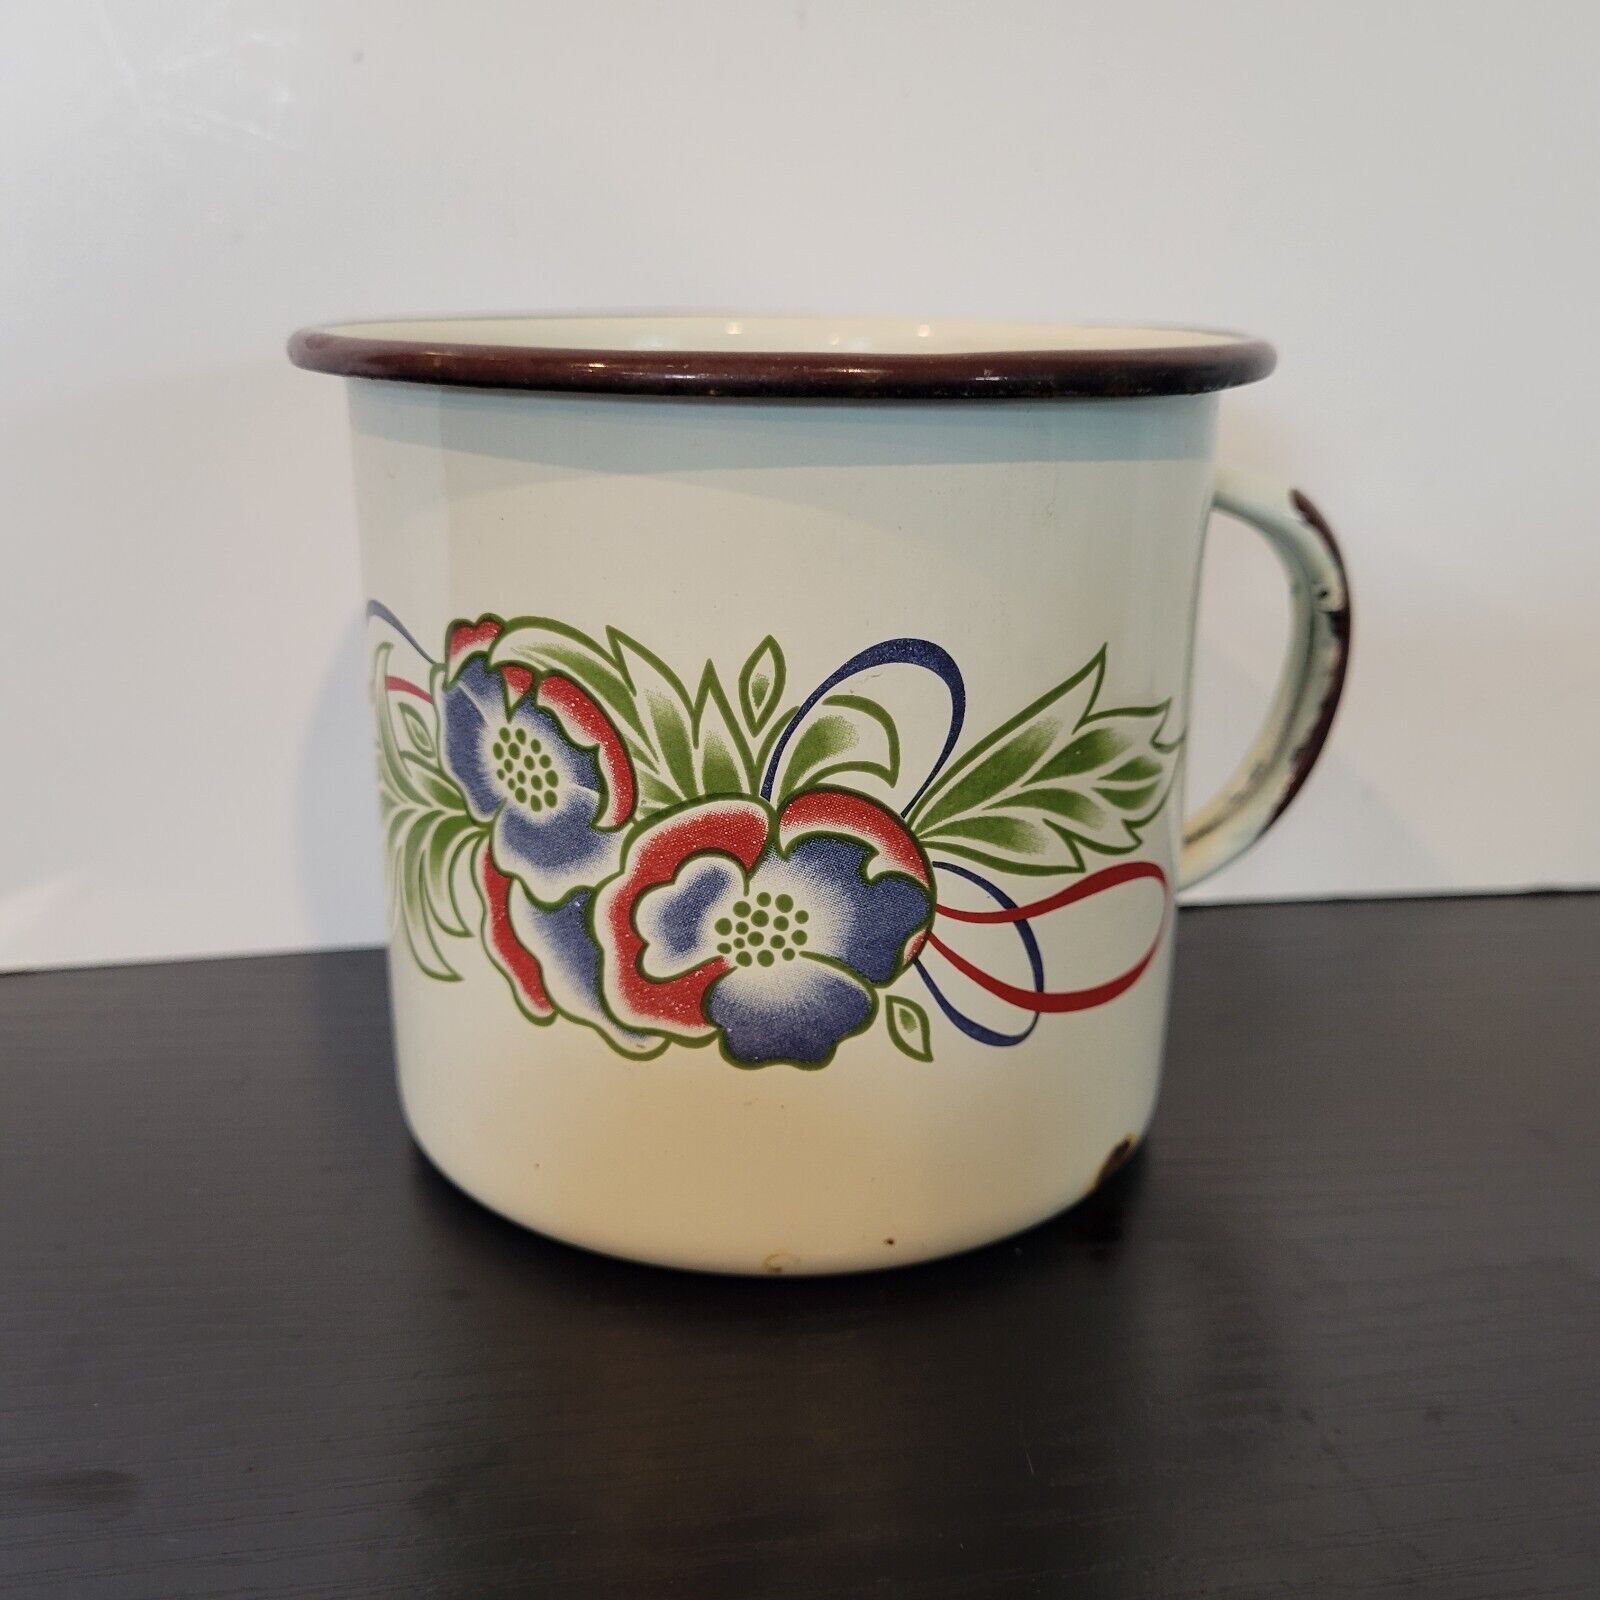 Vintage Enamel Ware Coffee Cup Mug Red/Blue/Green Floral Brown Rim & Handle Mug